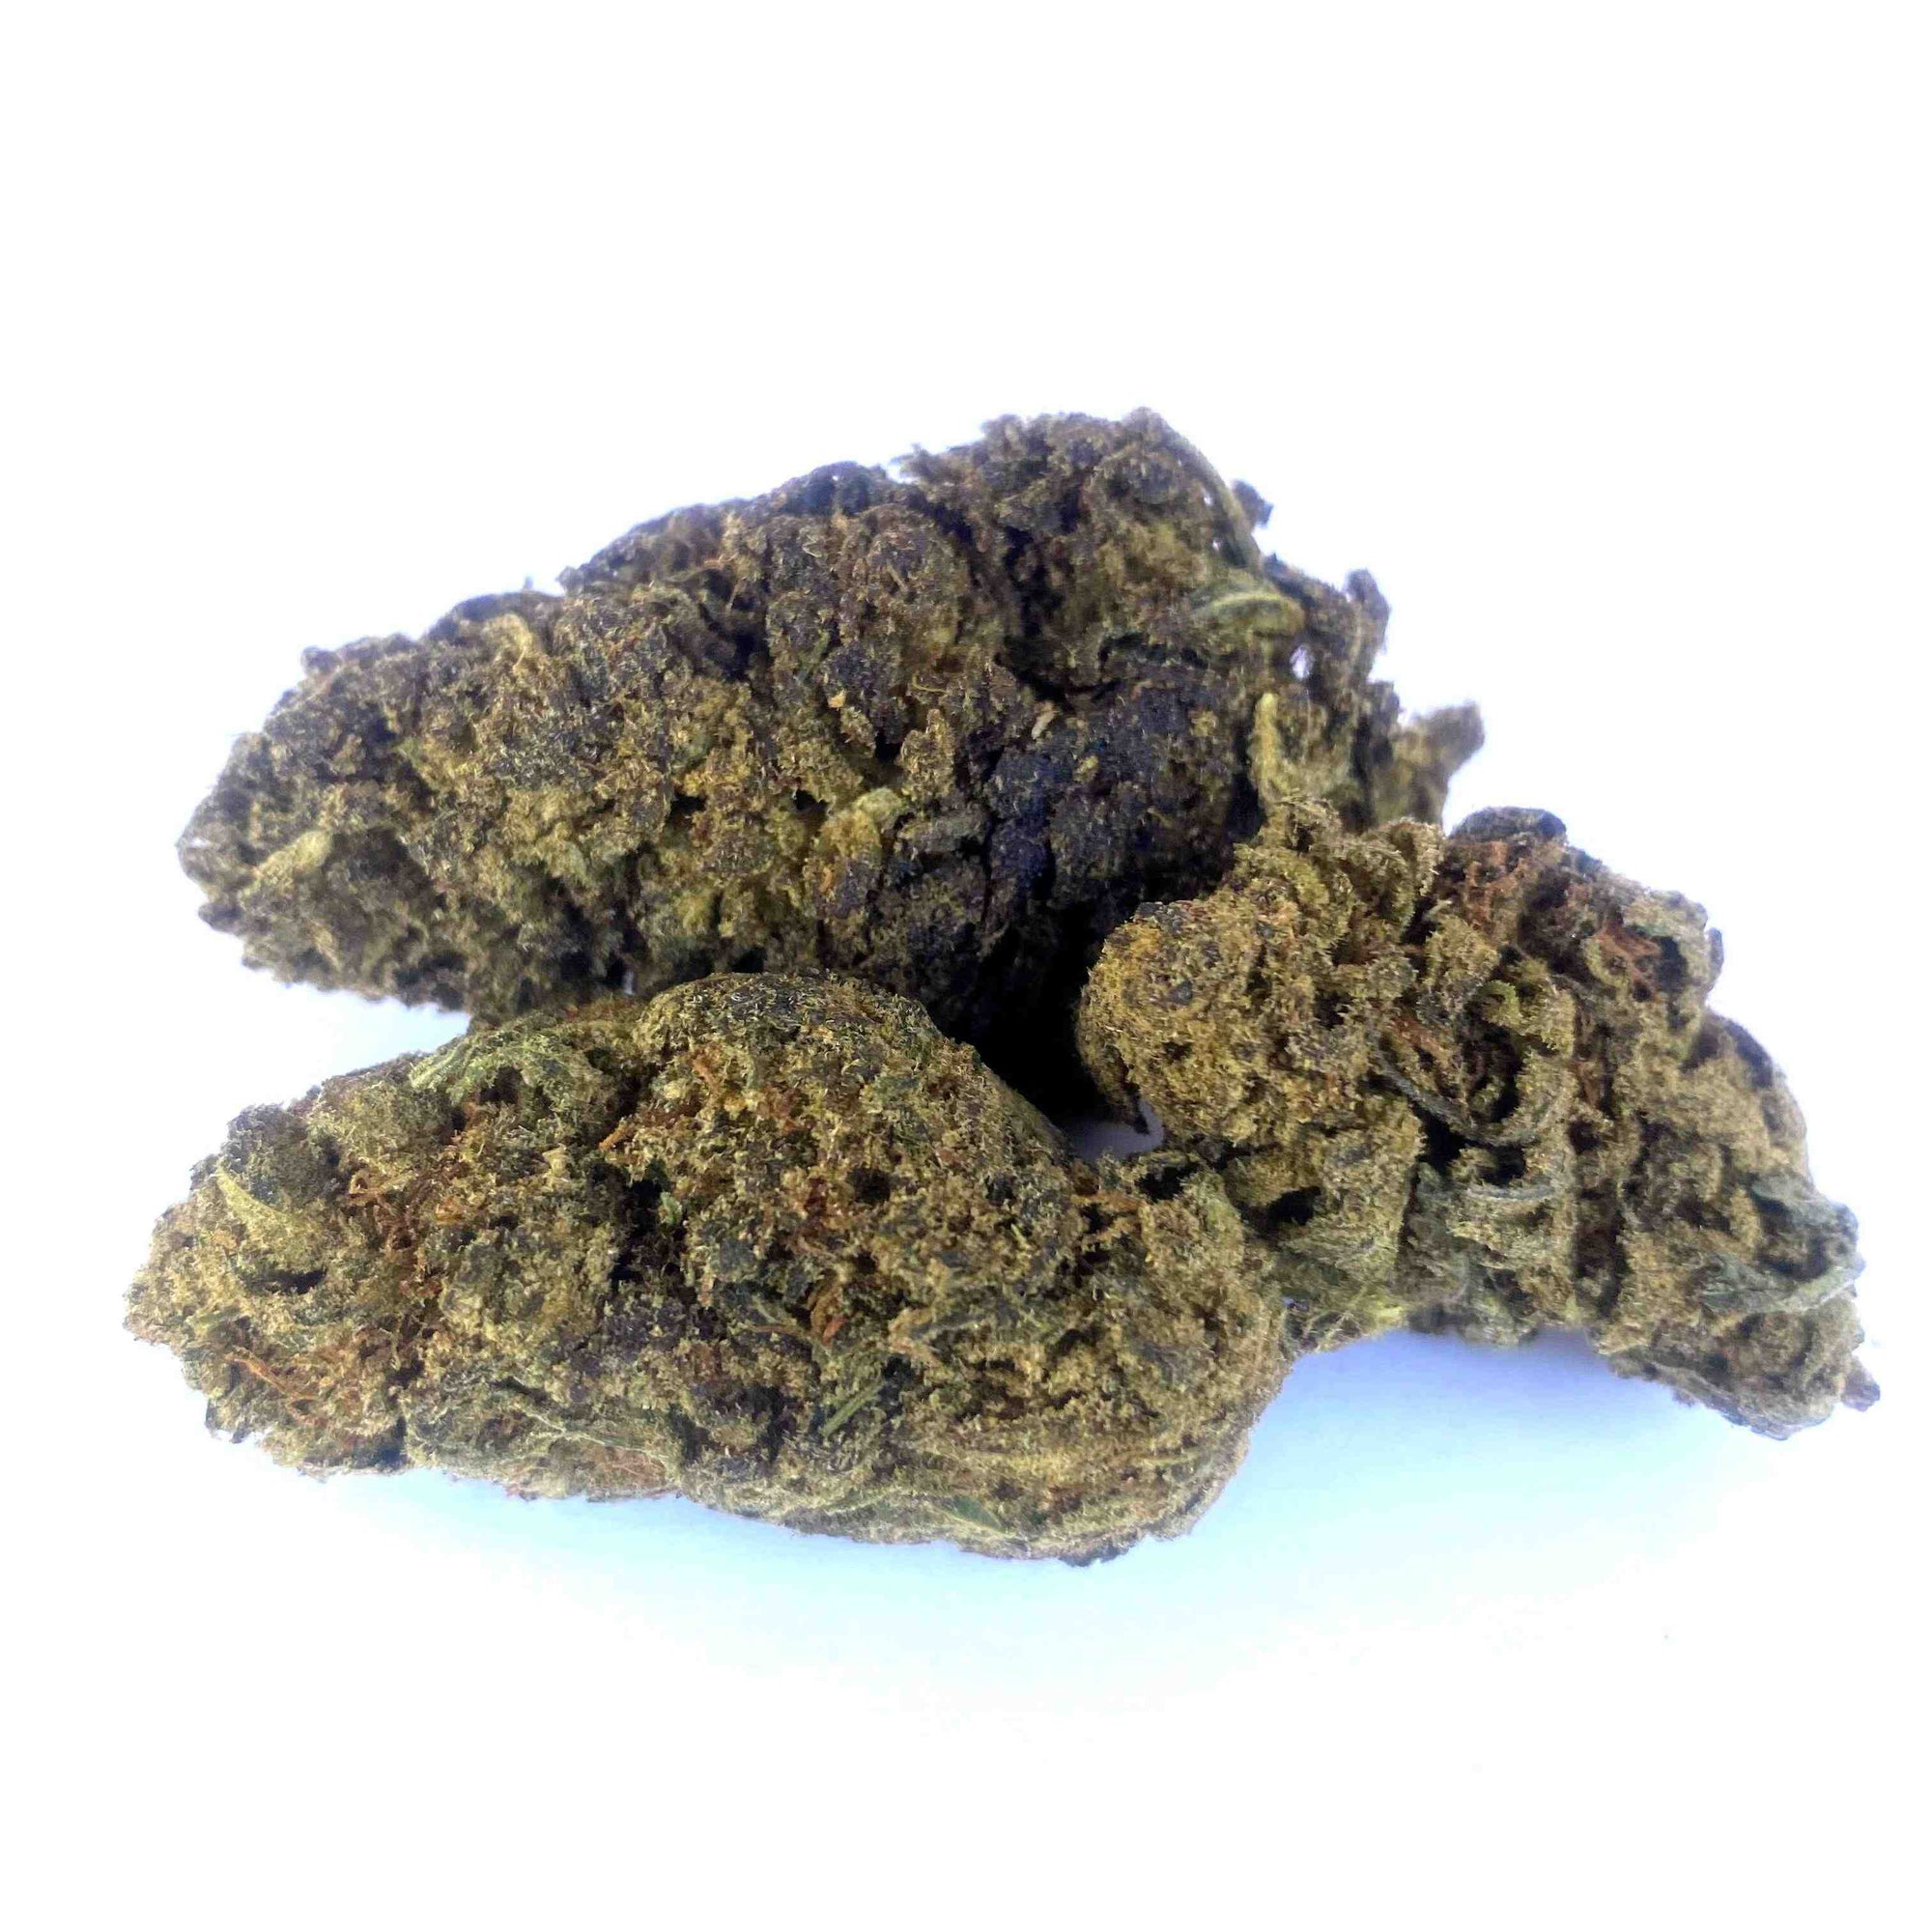 Blue Dream D8 Hemp flower Joint - BackWoodz Cartel Cannabis